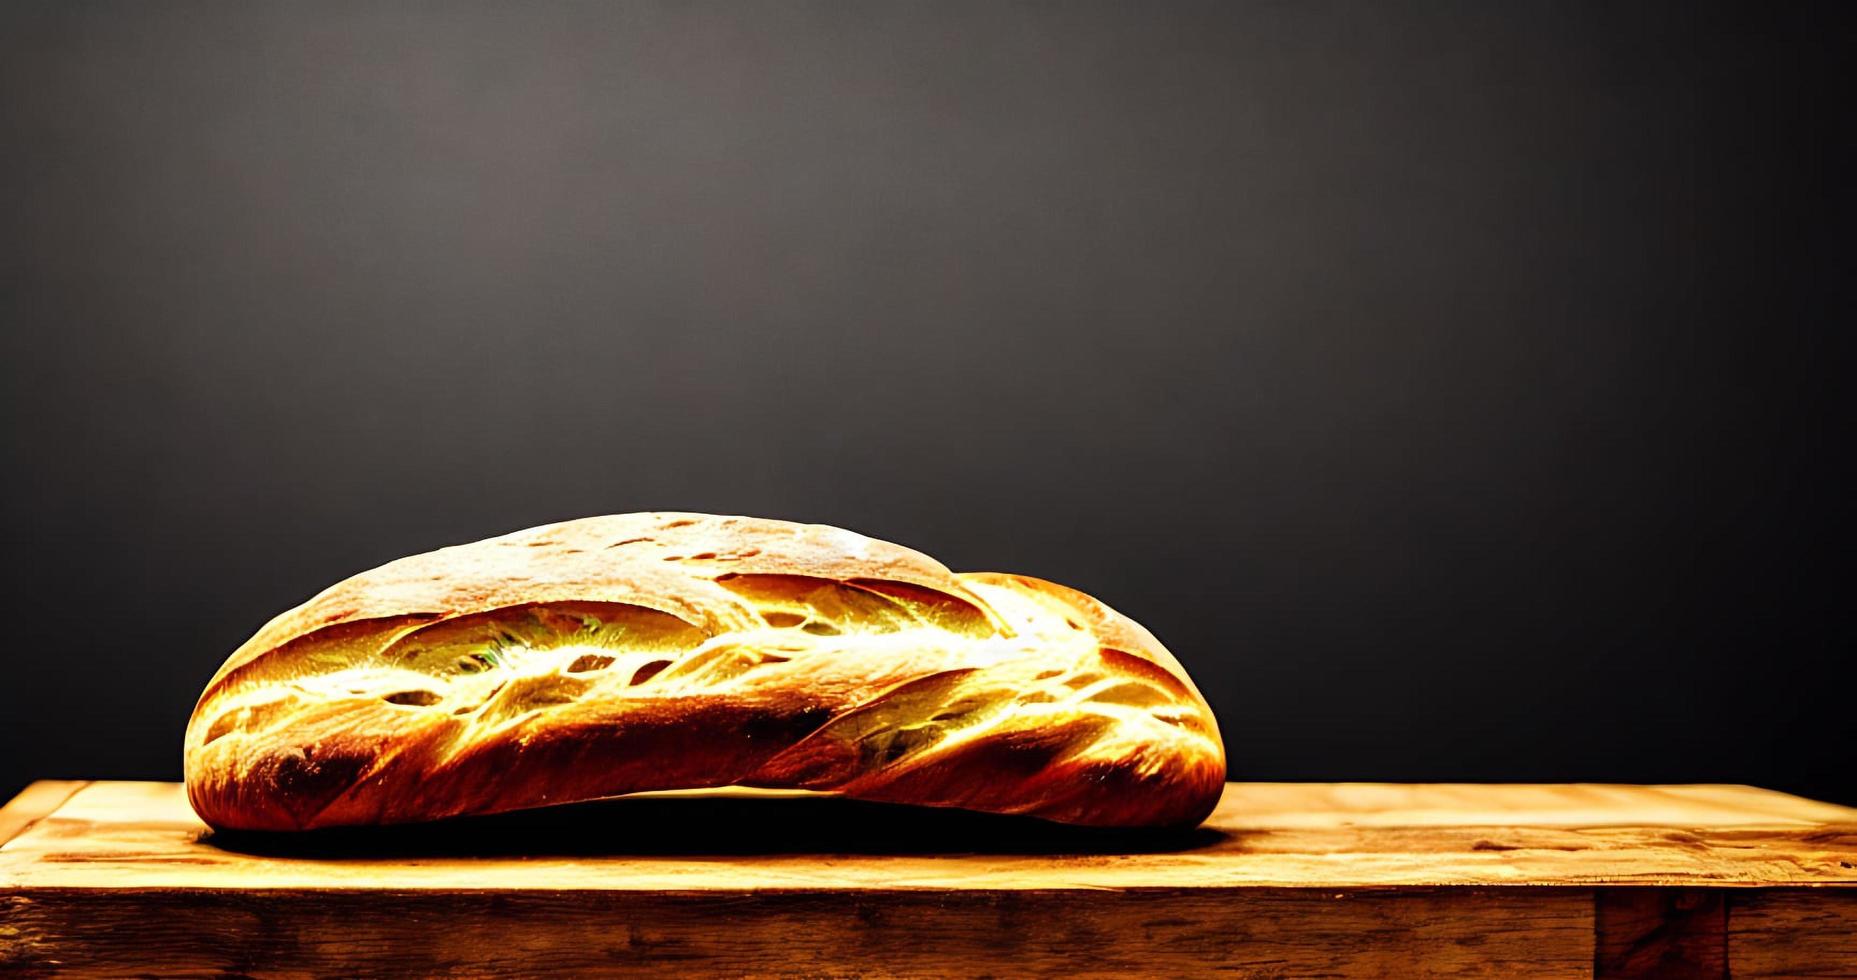 four - pain traditionnel cuit frais et chaud. tir à pain proche. photo